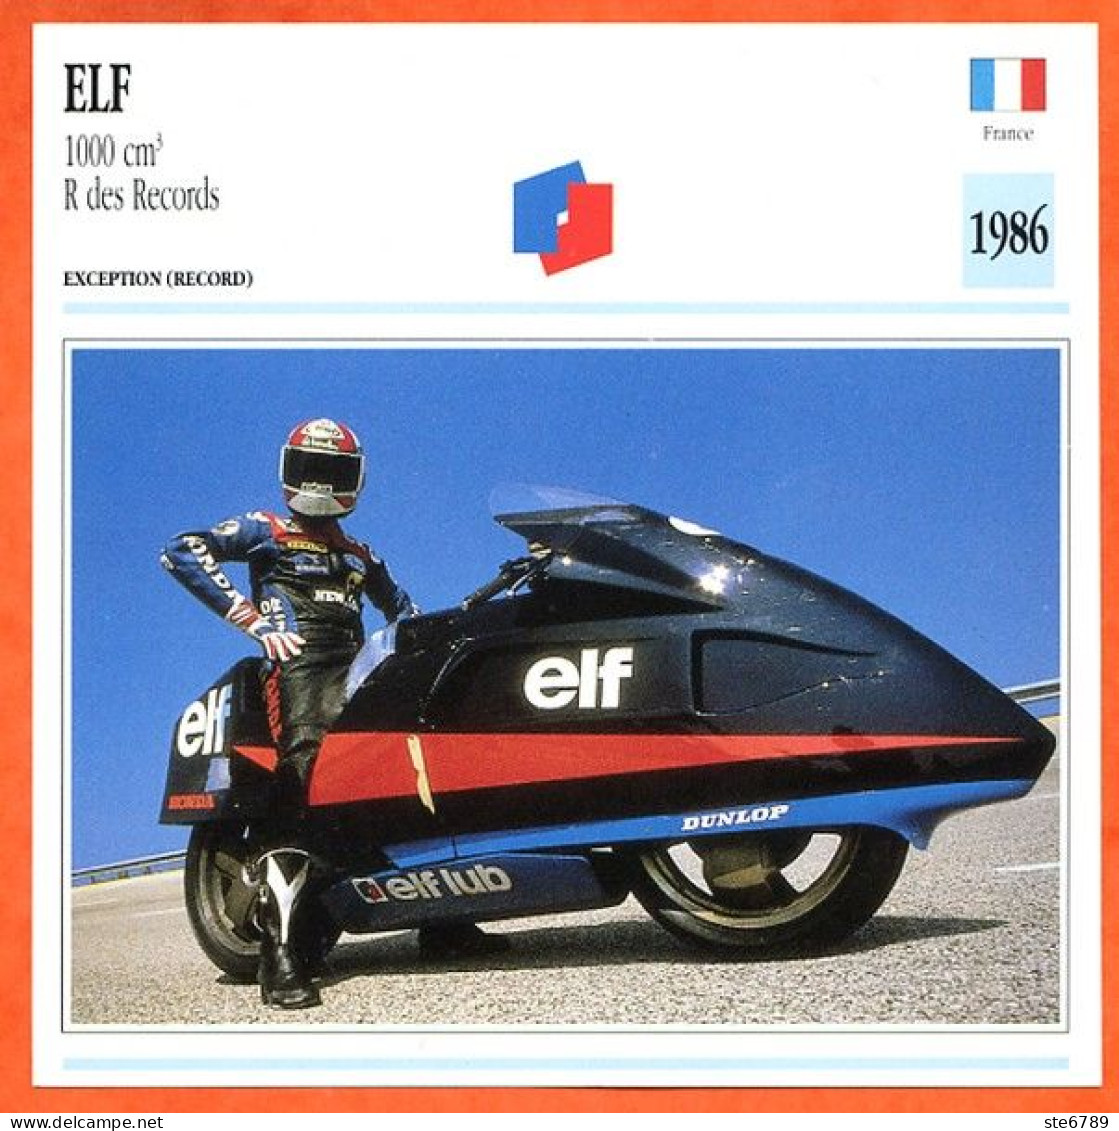 ELF 1000 R Records  1986 France Fiche Technique Moto - Sport